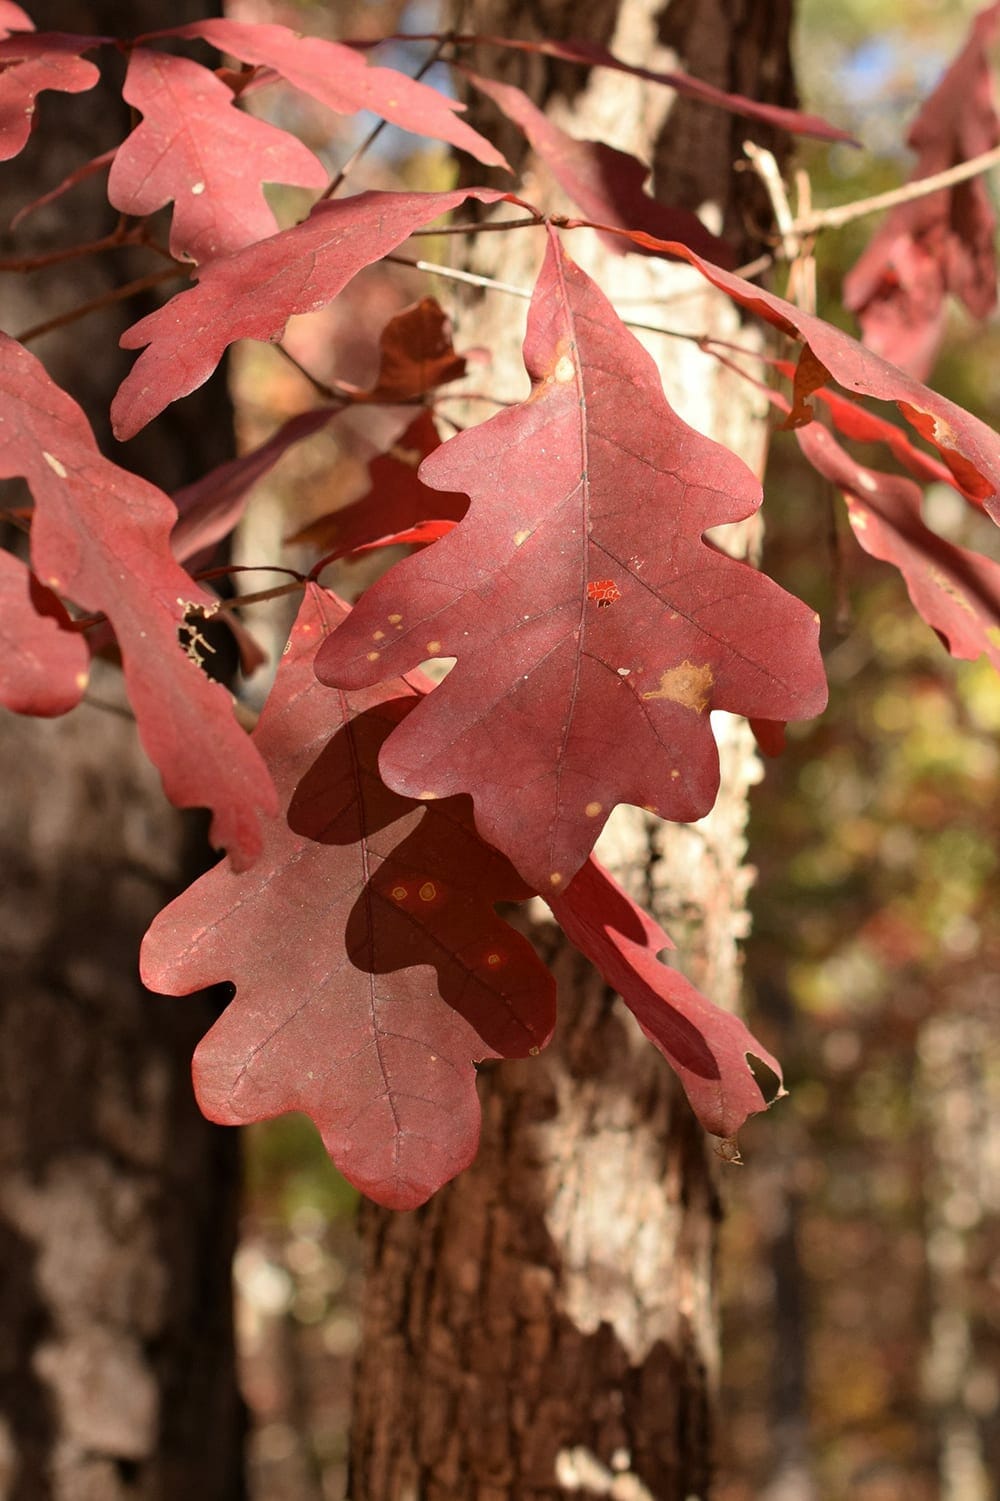 Auttumn leaves of Quercus alba